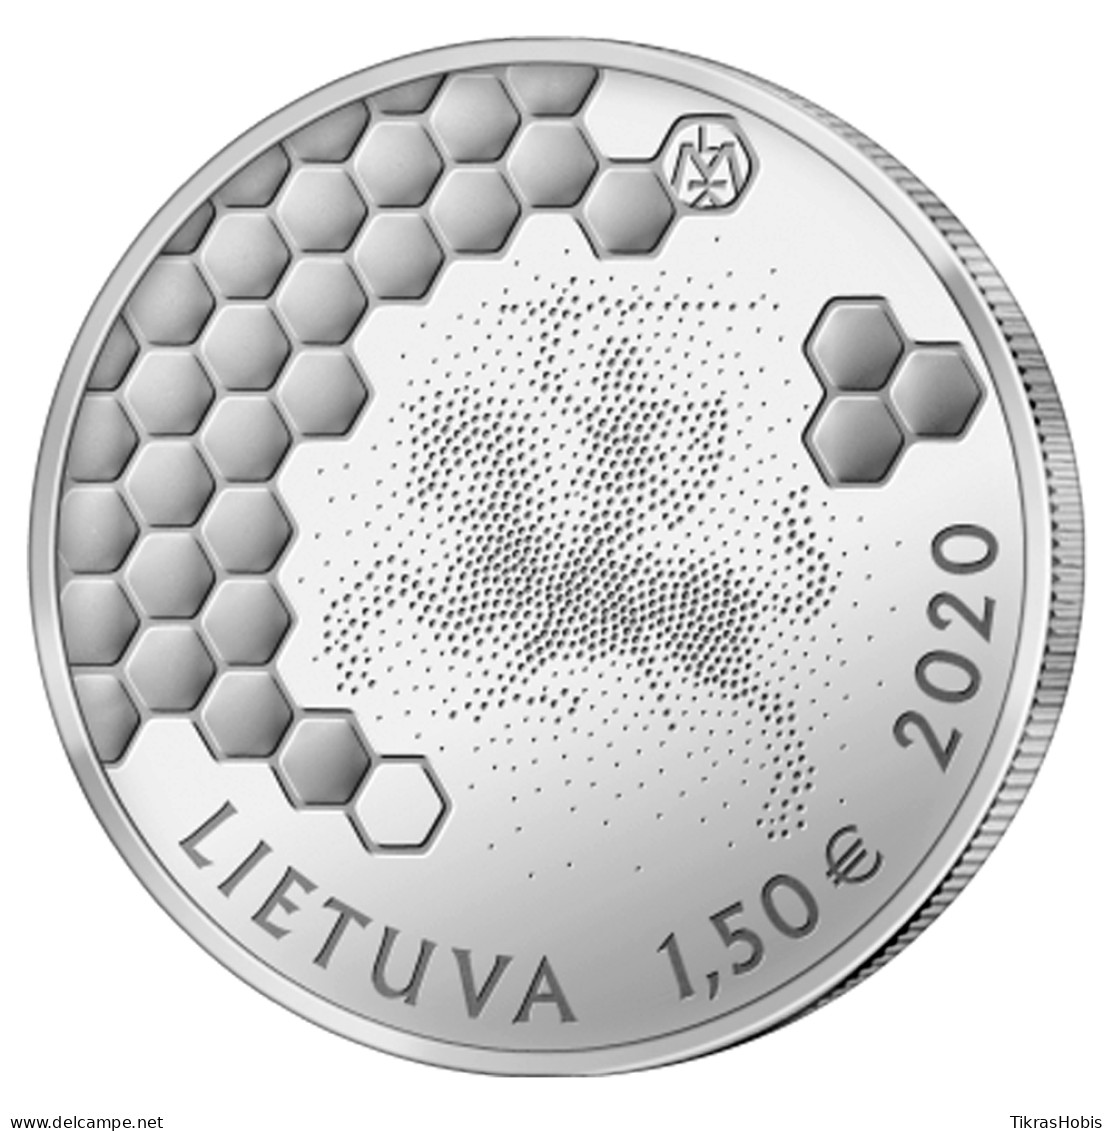 Lithuania 1,50 Euro, 2020 Hollow Beekeeping - Lituania